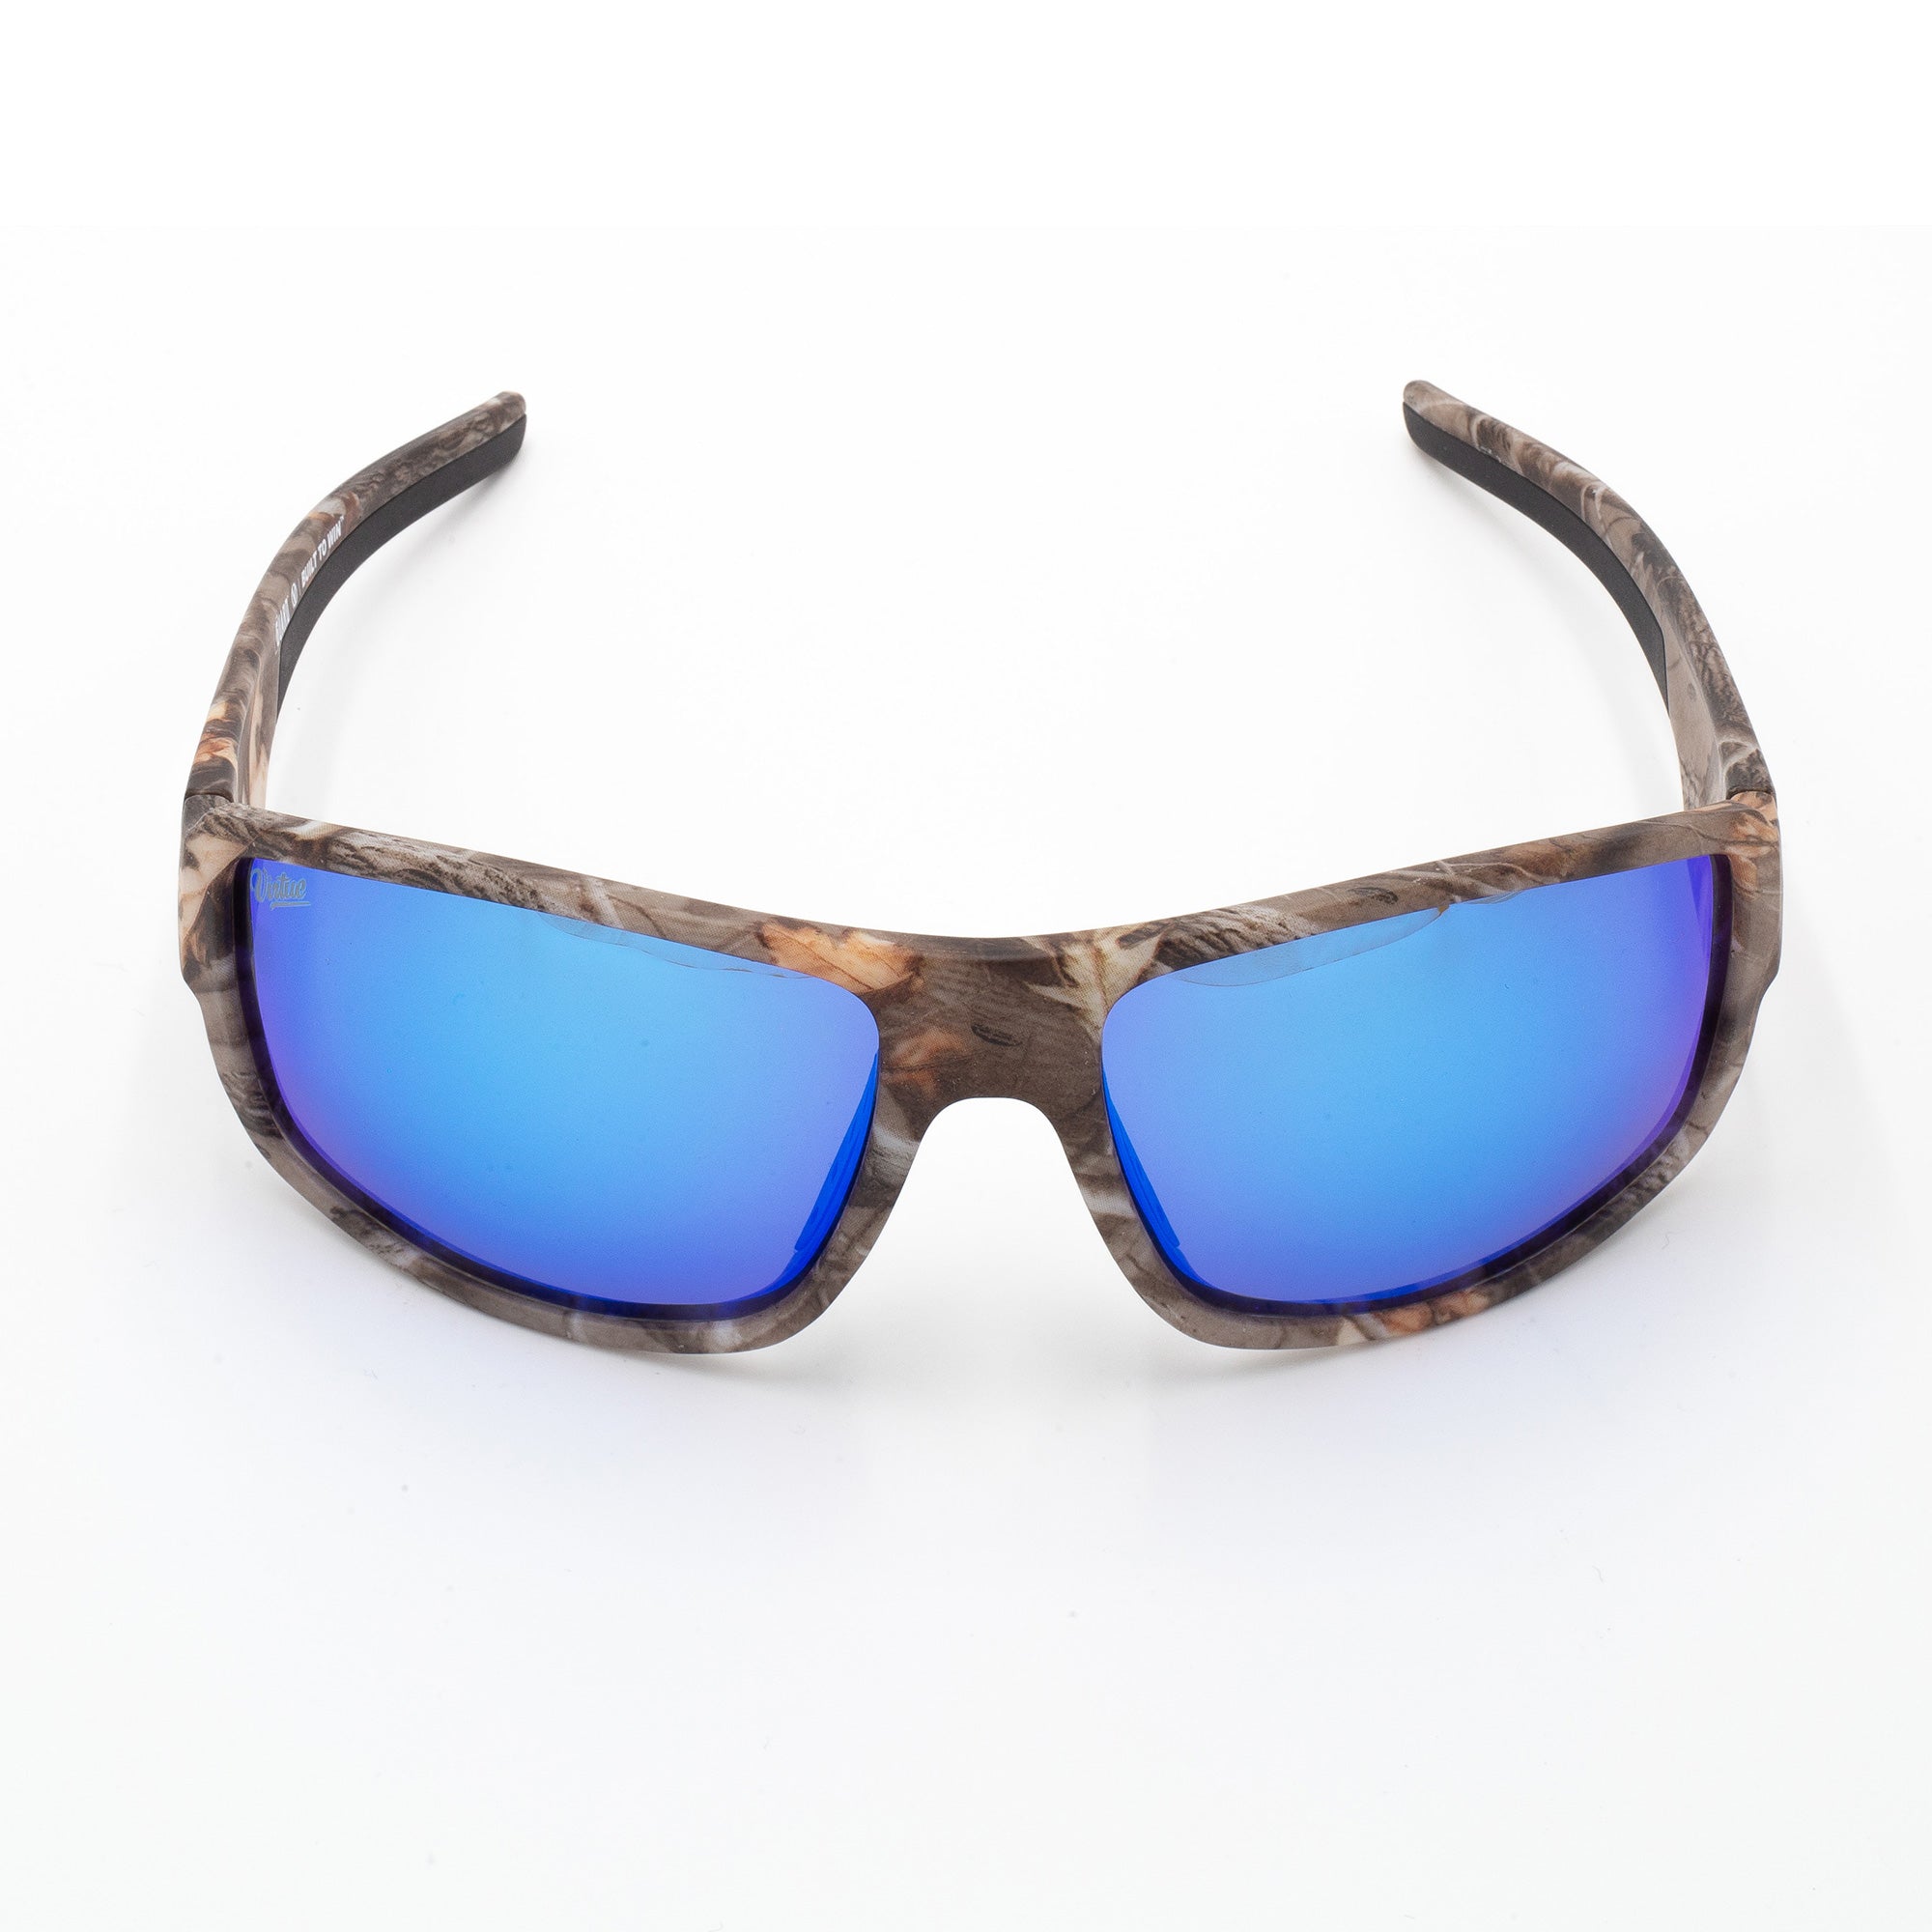 Virtue V-Guard Polarized Sunglasses - Camo Ice